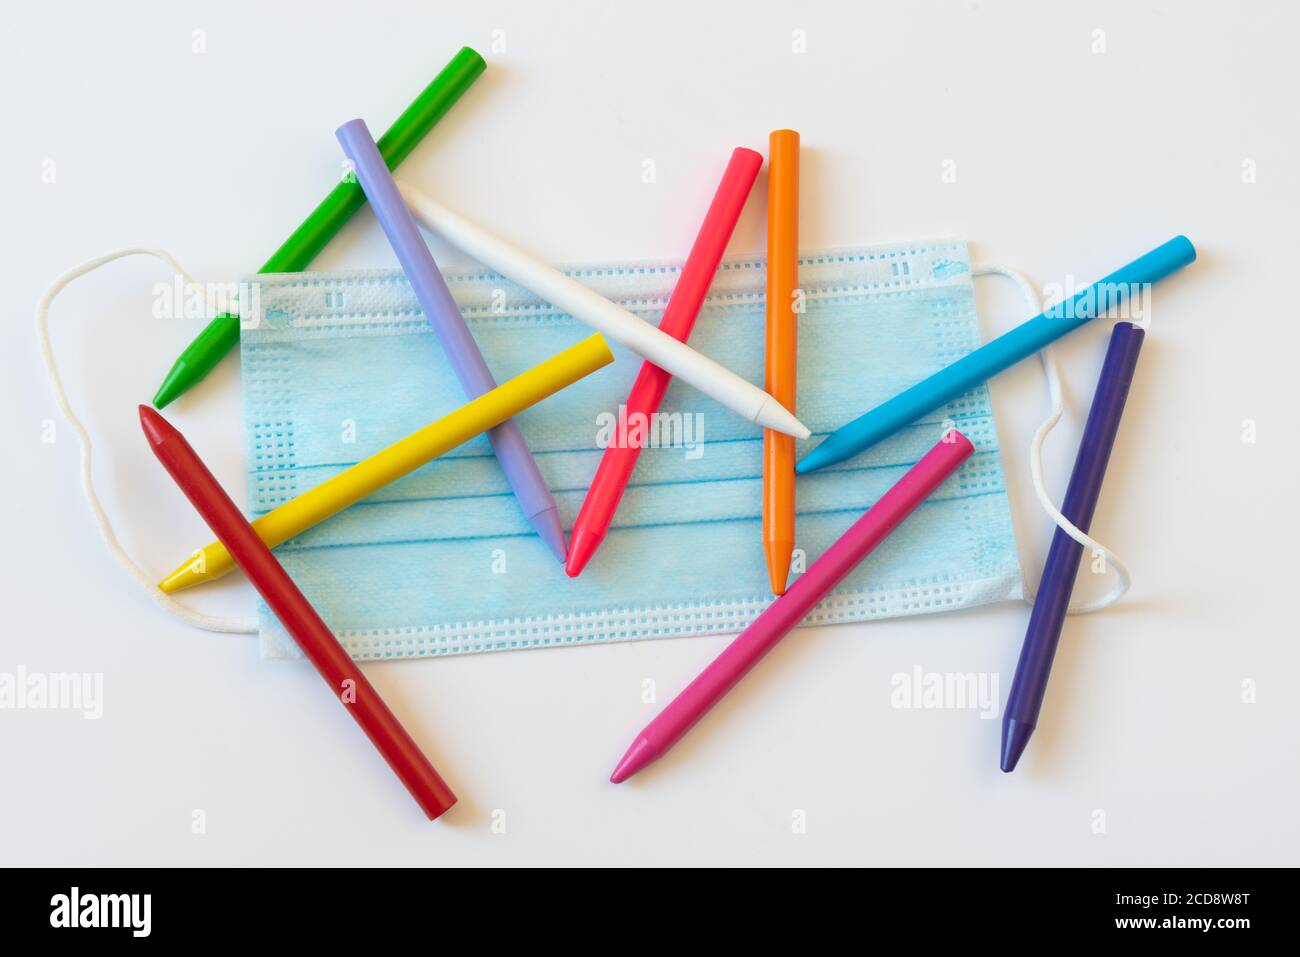 Anti virus masque sur certains crayons de couleur d'école. Concept de retour à l'école dans la nouvelle norme. Banque D'Images